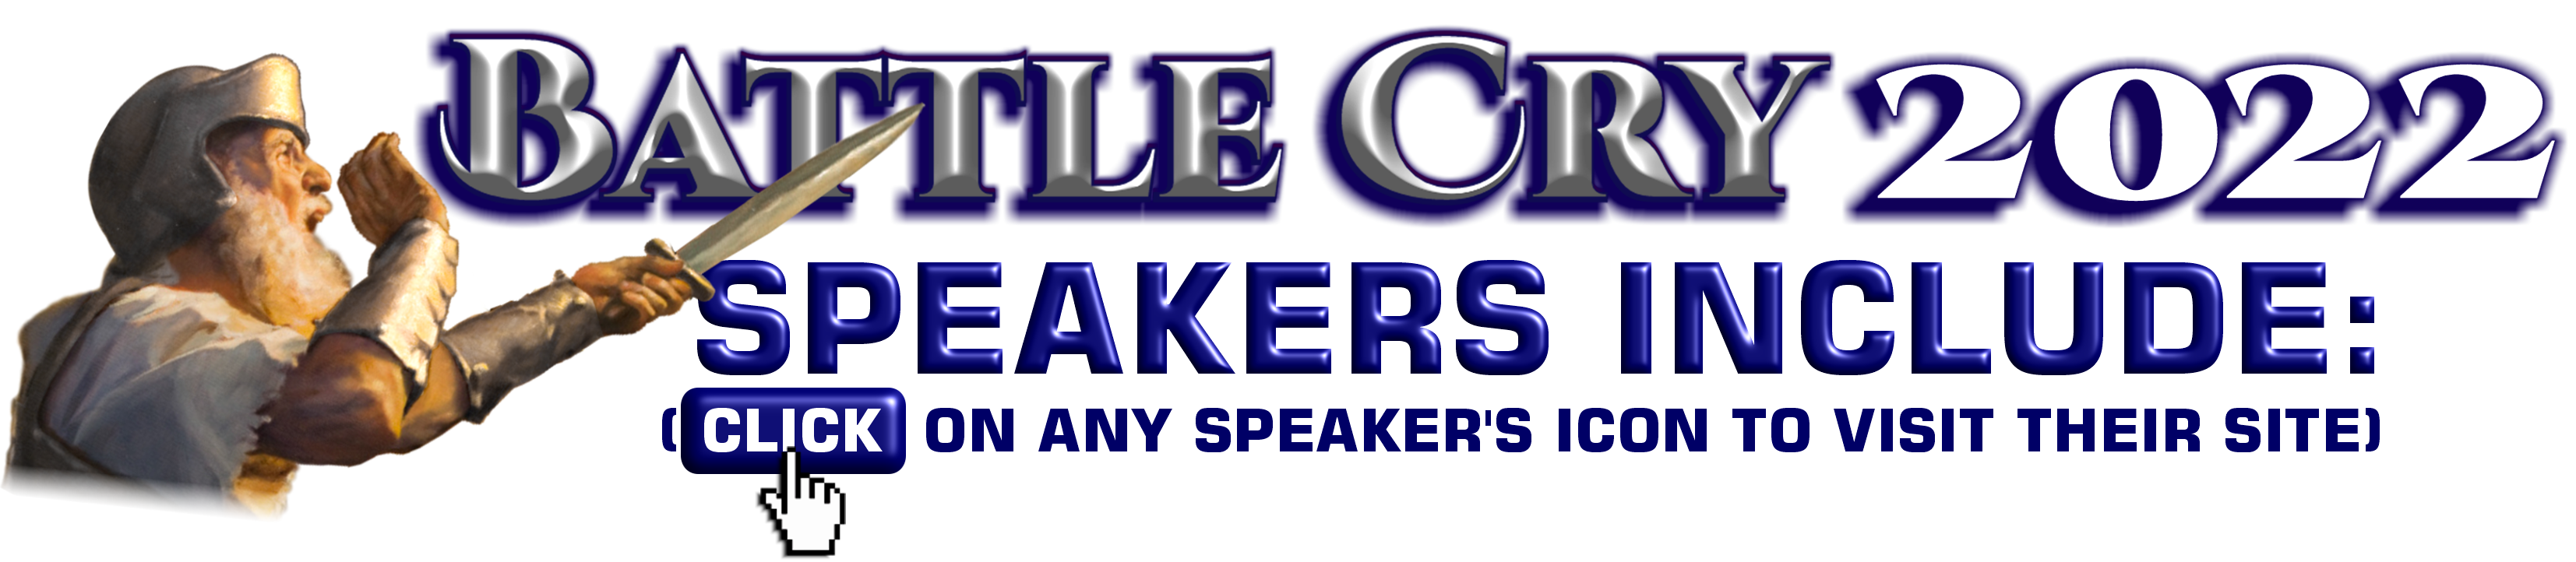 Header_Speakers